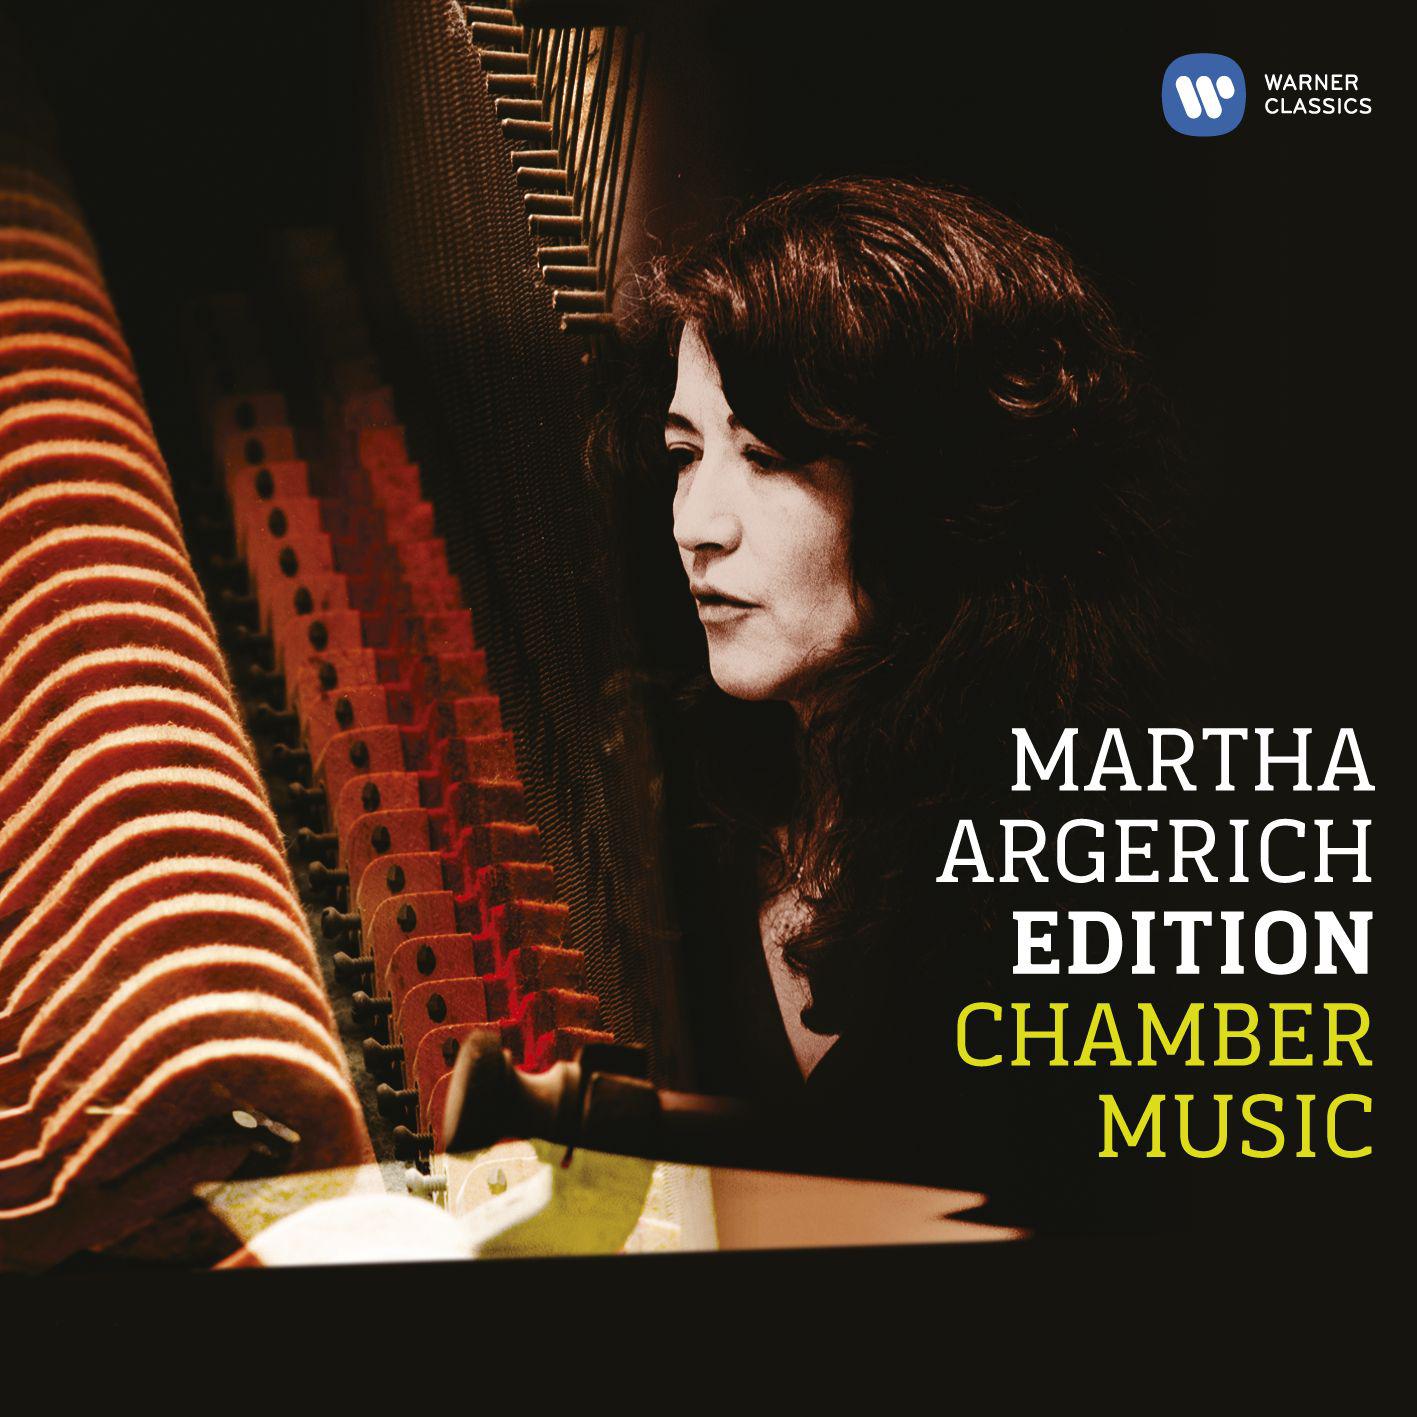 Martha Argerich - Piano Quartet in E-Flat Major, Op. 47:I. Sostenuto assai - Allegro ma non troppo (Live)